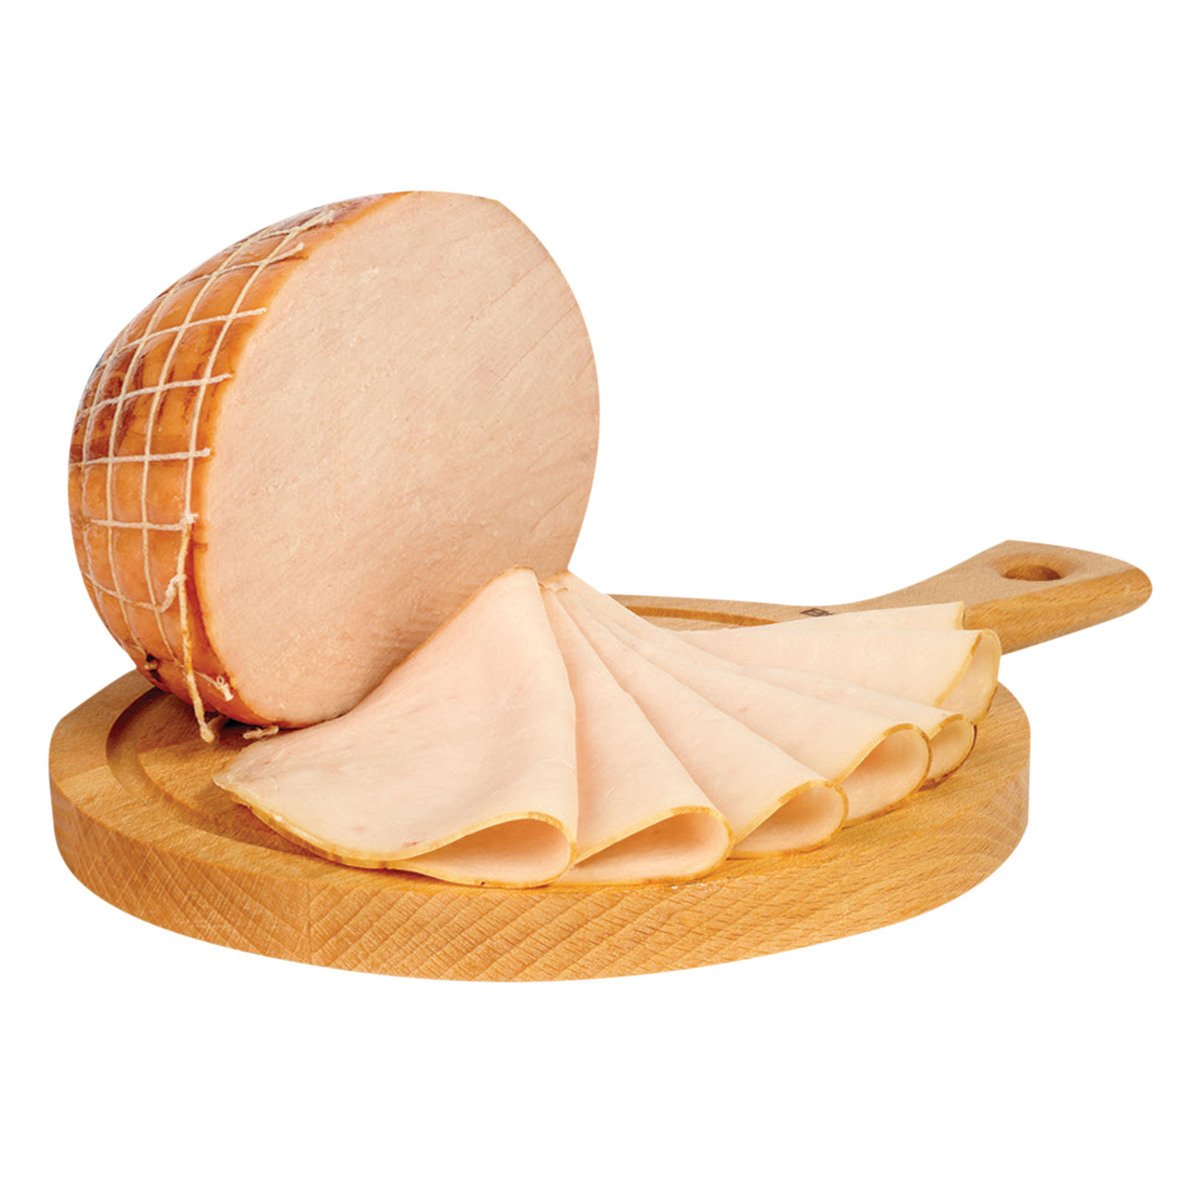 Buy Prime Smoked Turkey Breast Low Fat Roll 250 g Online at Best Price | Cooked  Turkey | Lulu UAE in UAE